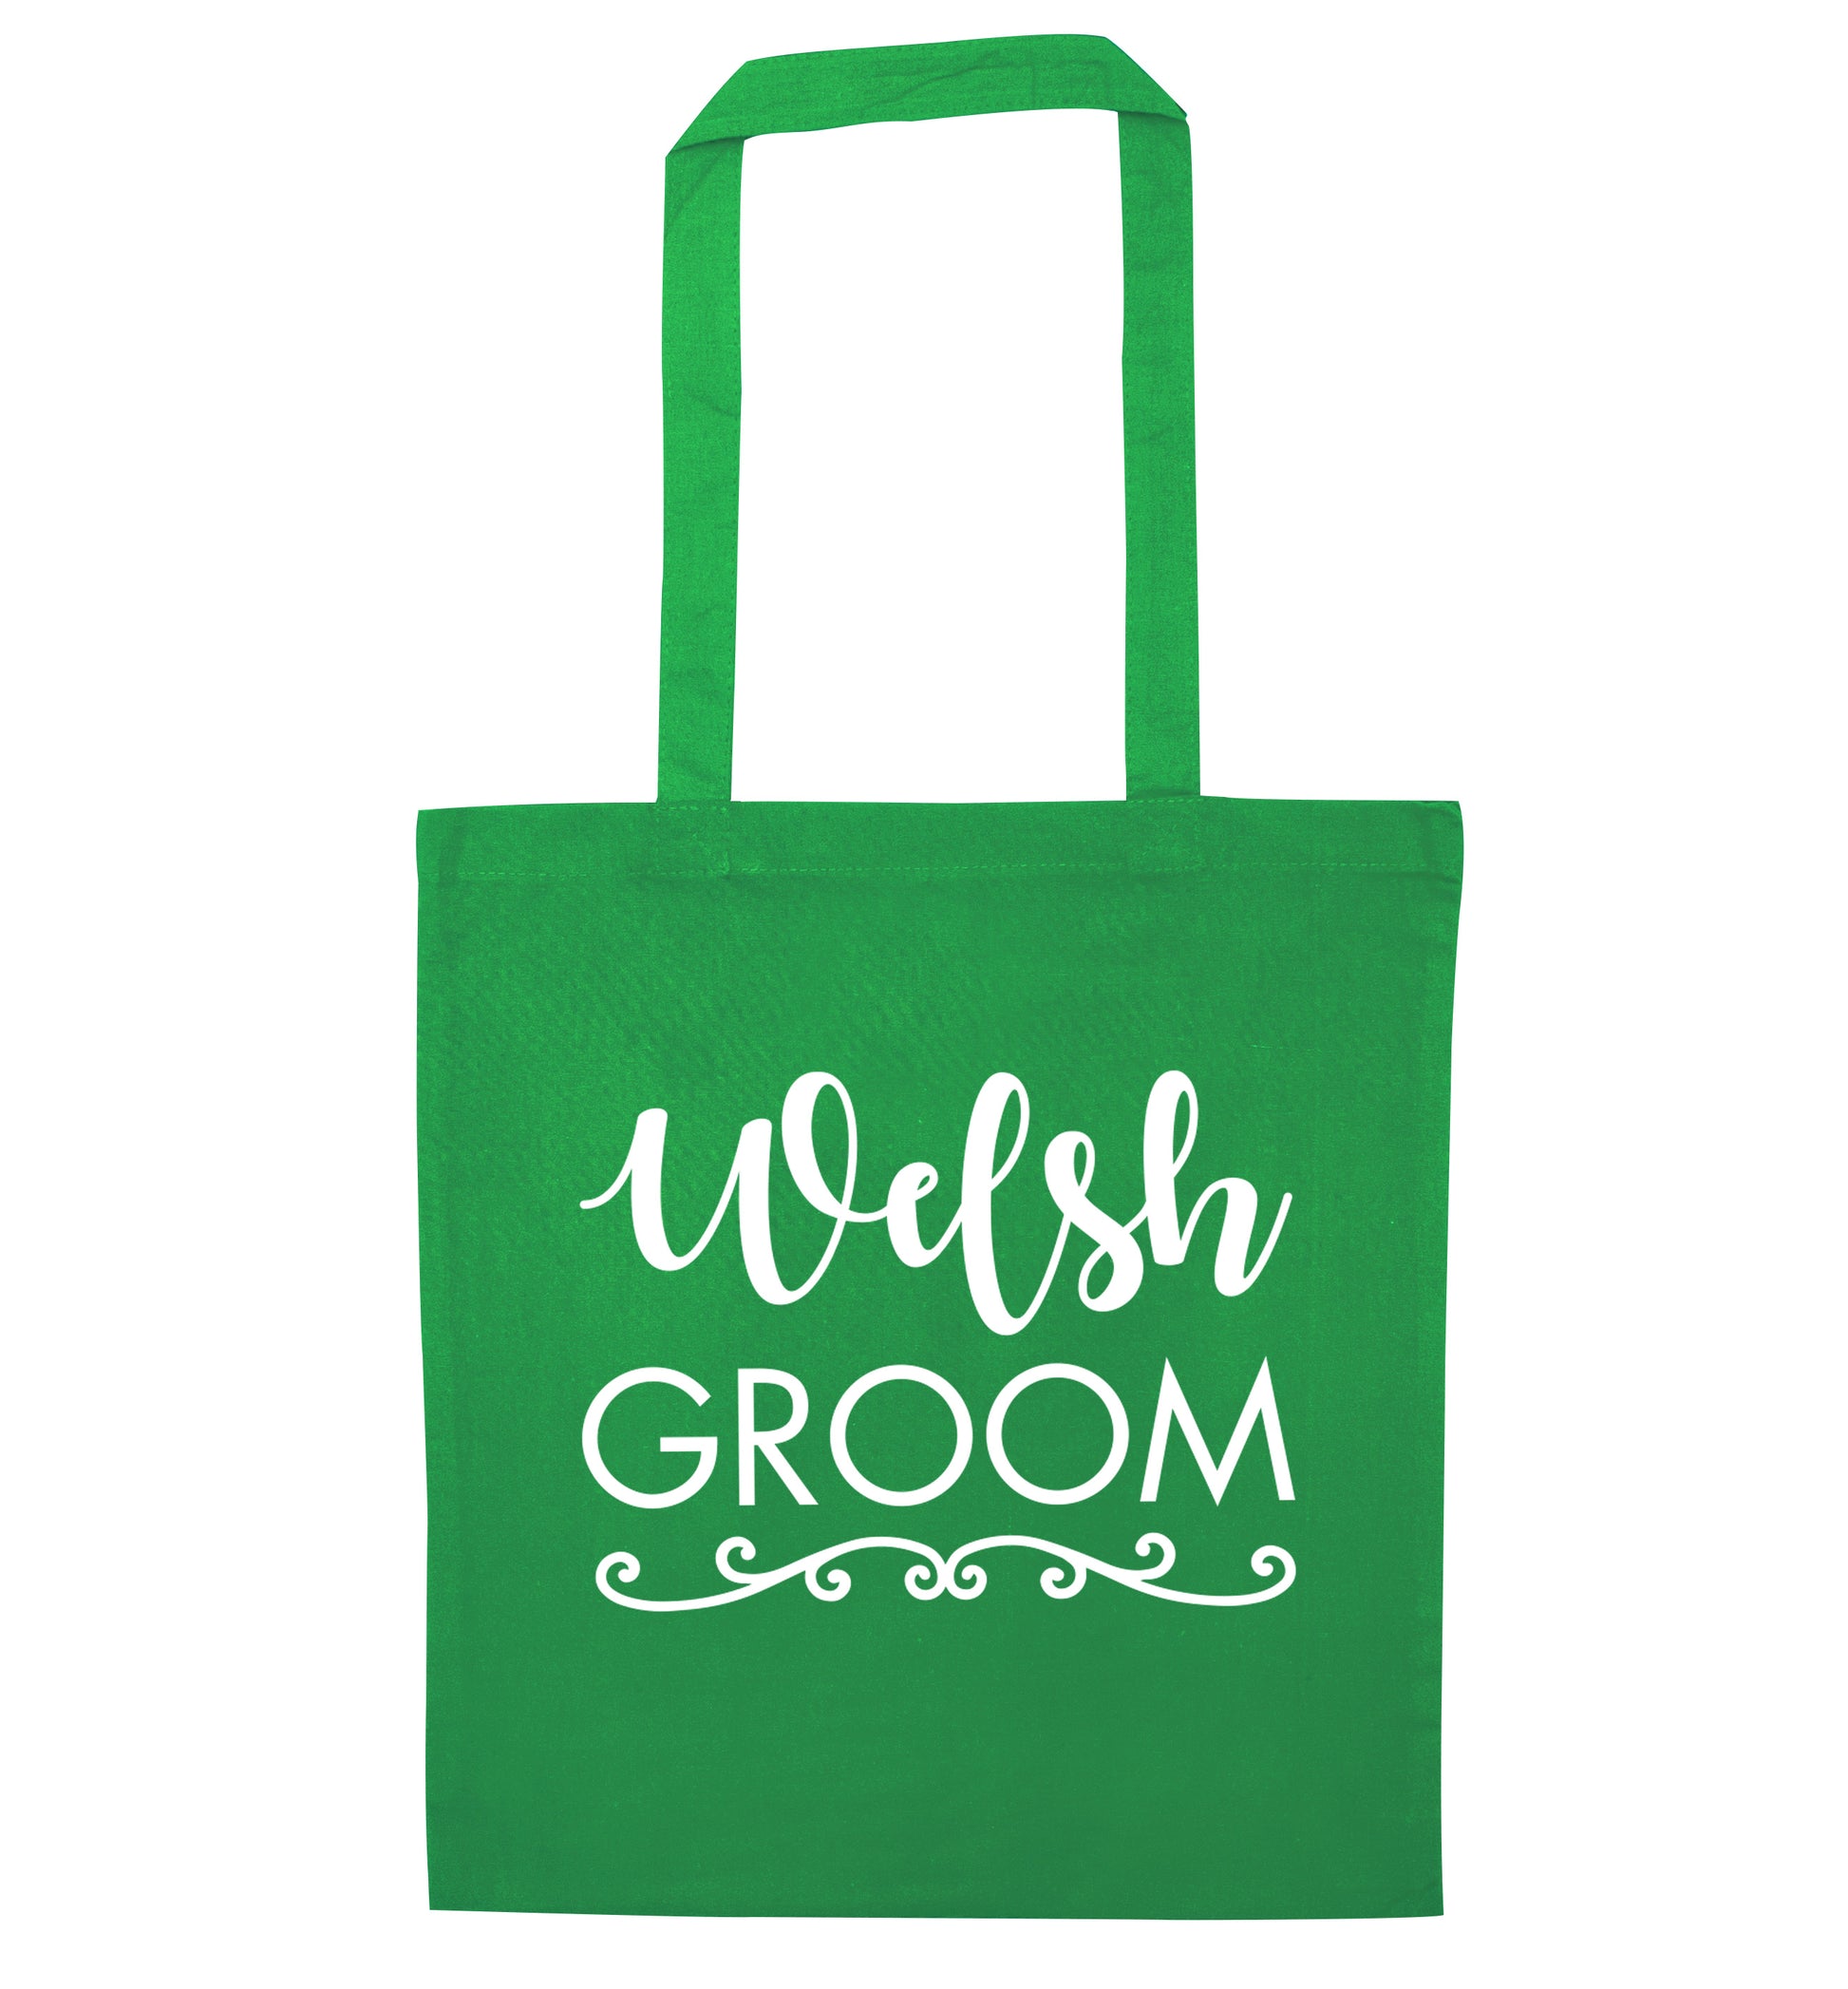 Welsh groom green tote bag